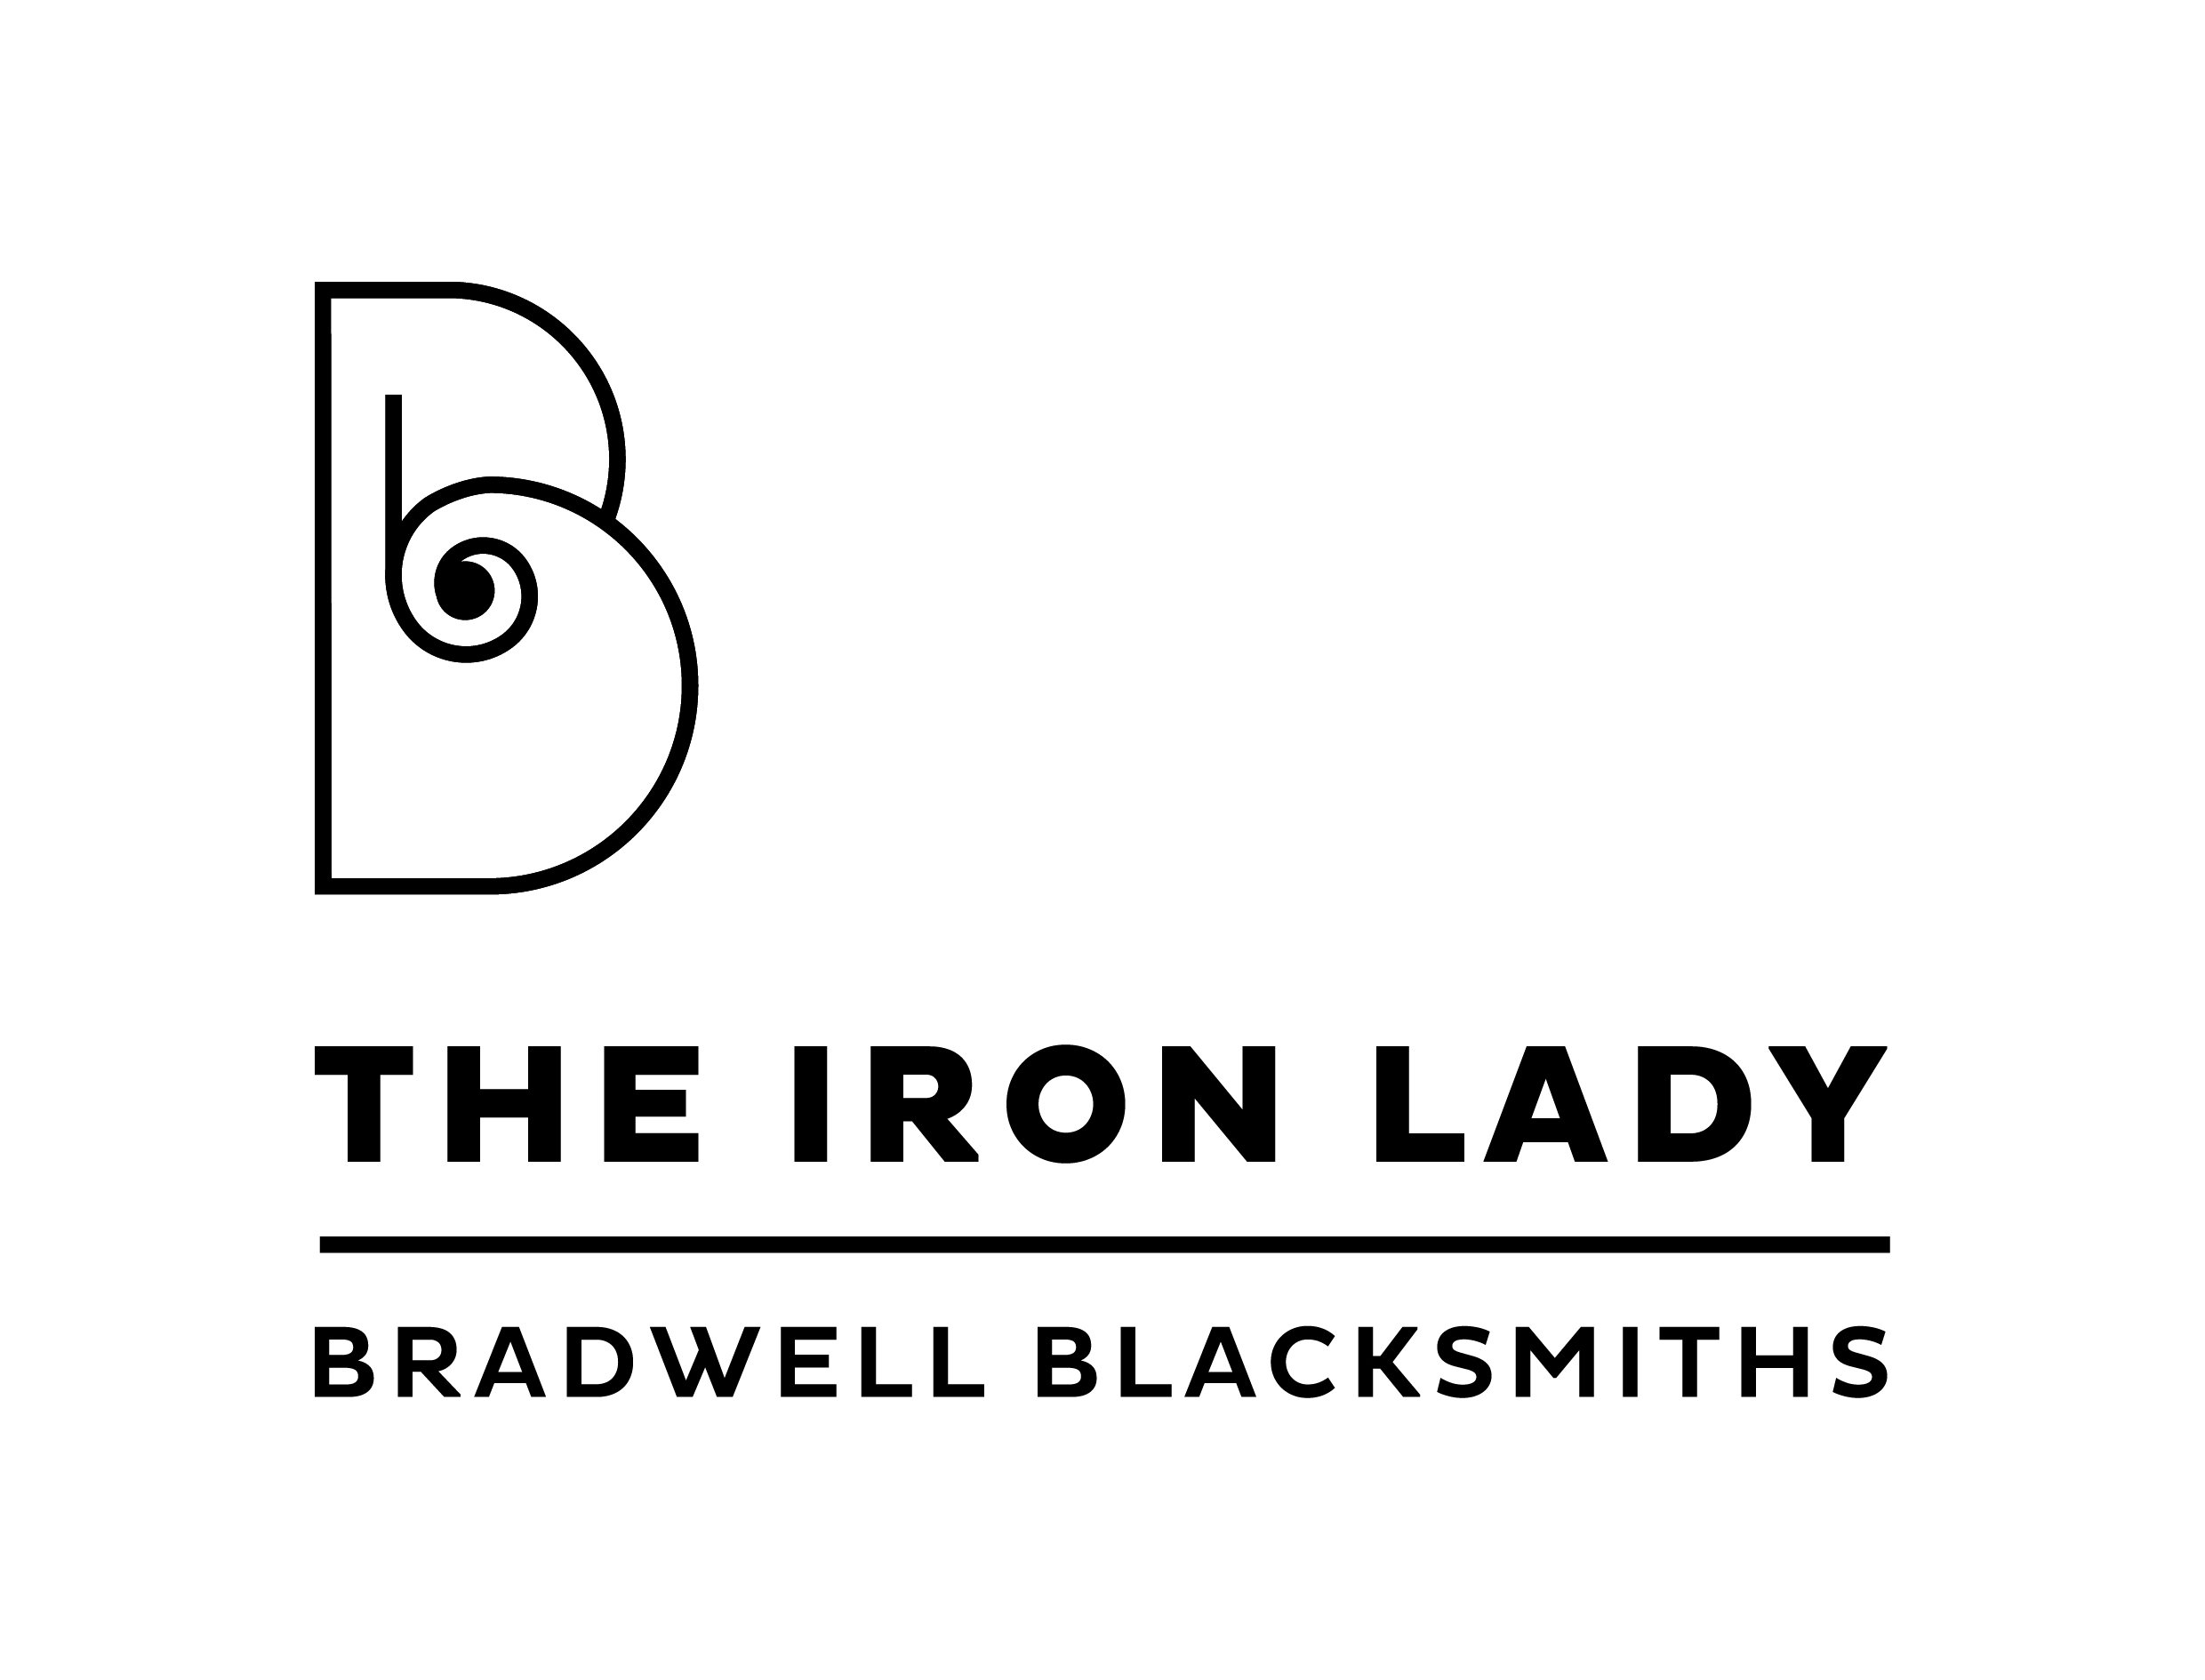 Bradwell Blacksmiths - The Iron Lady logo